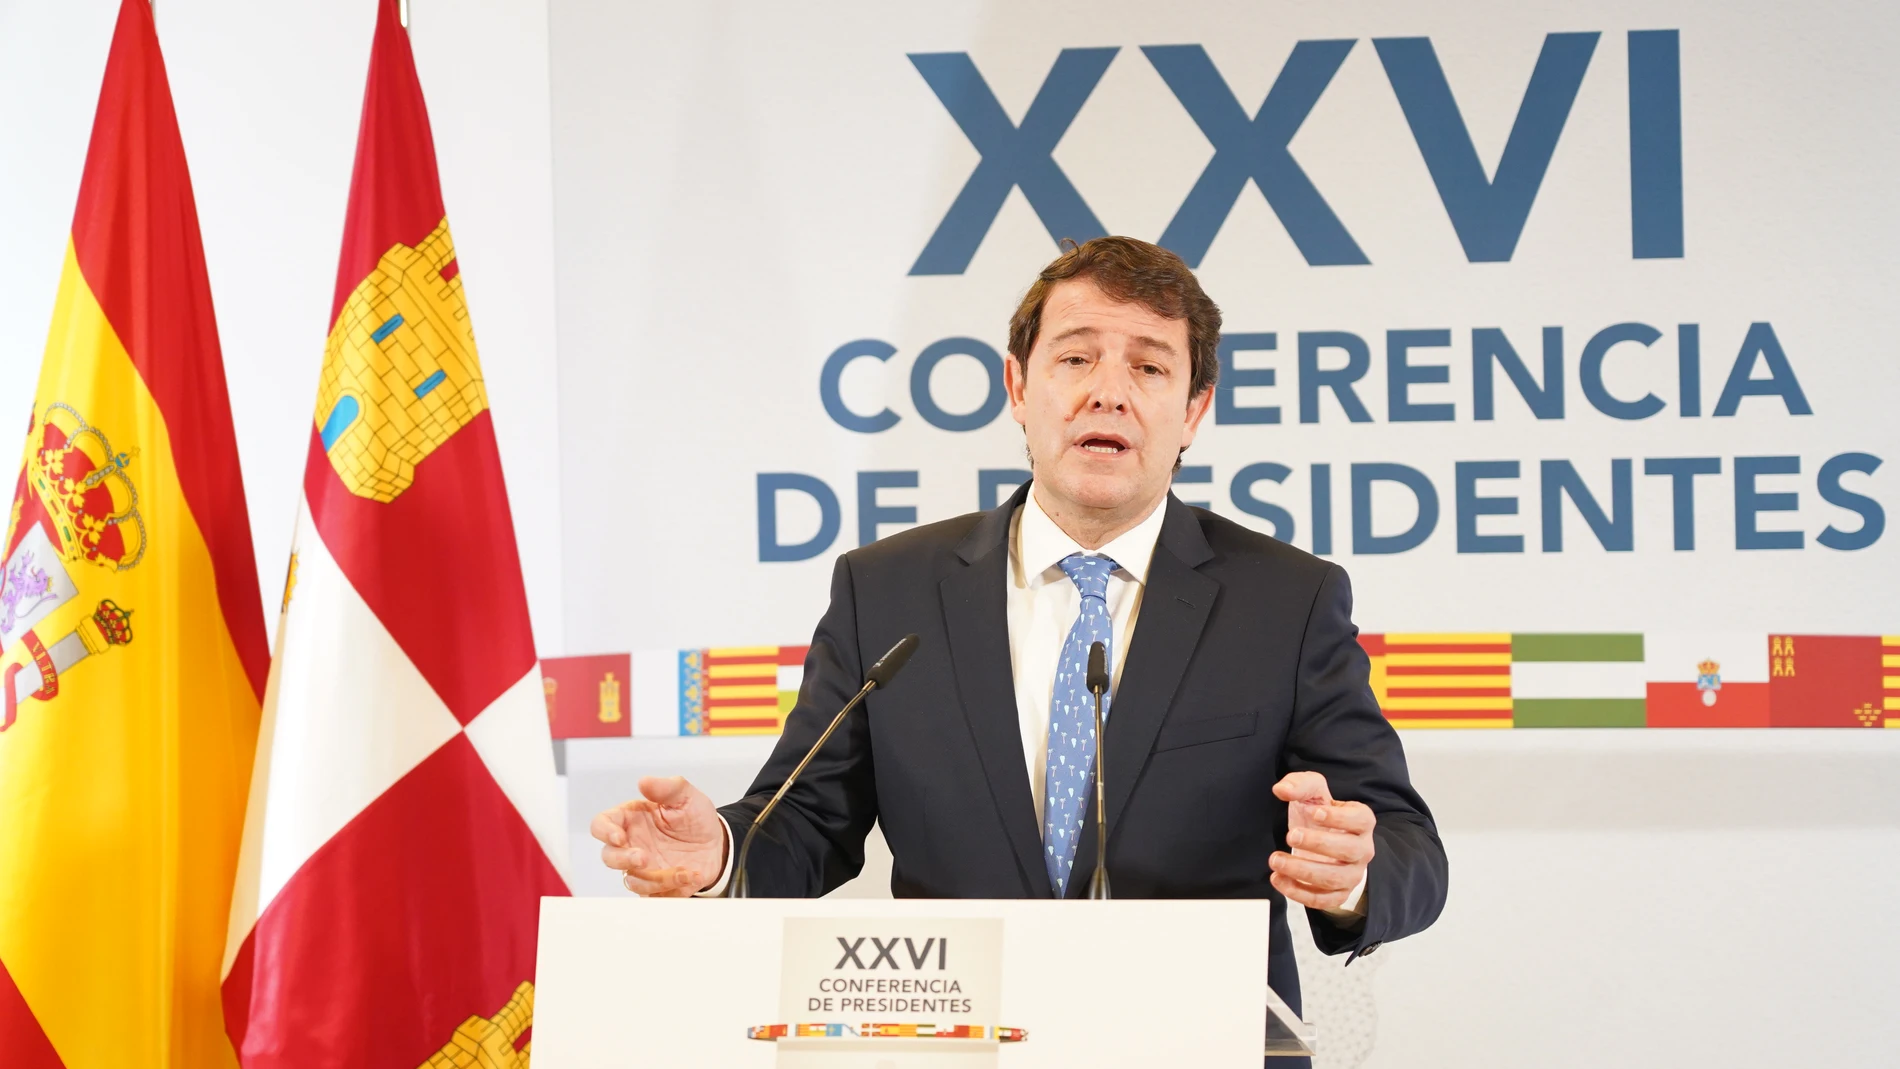 El presidente de la Junta de Castilla y León en funciones, Alfonso Fernández Mañueco, valora la Conferencia de Presidentes